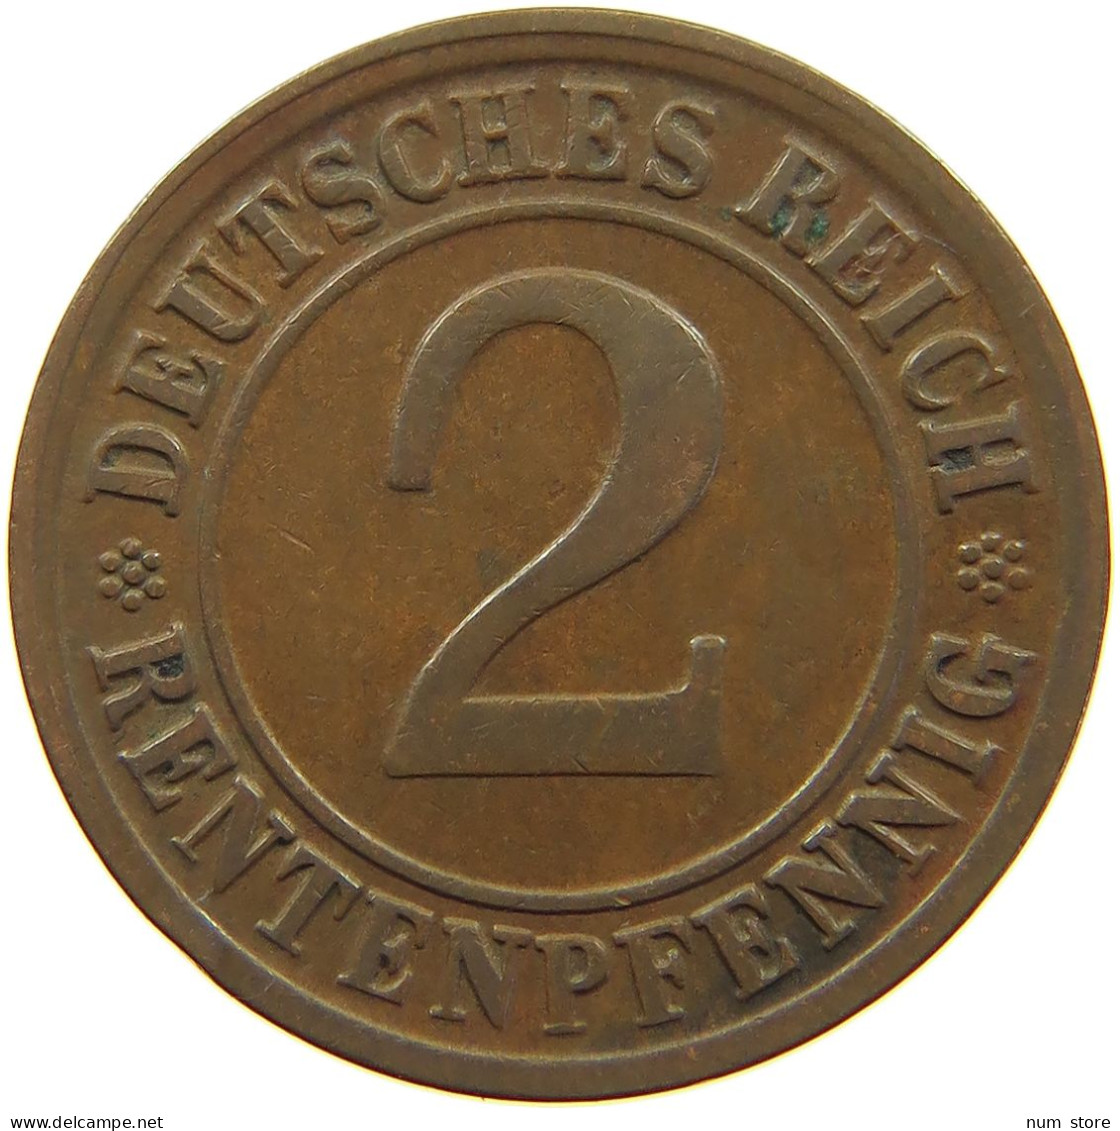 WEIMARER REPUBLIK 2 PFENNIG 1923 D EDGE ERROR #a074 0599 - 2 Rentenpfennig & 2 Reichspfennig